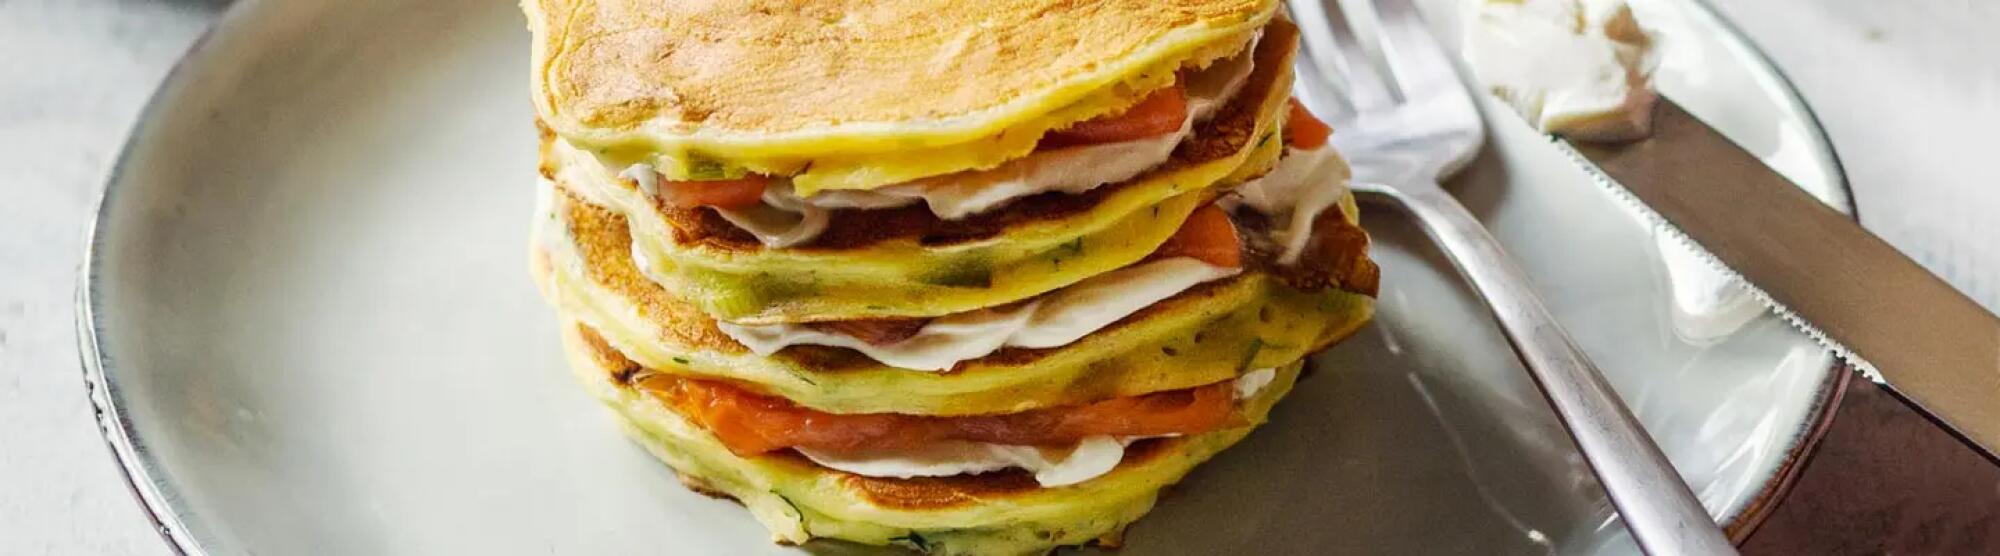 Recette : Gâteau de pancakes salés aux poireaux et saumon fumé au fromage frais